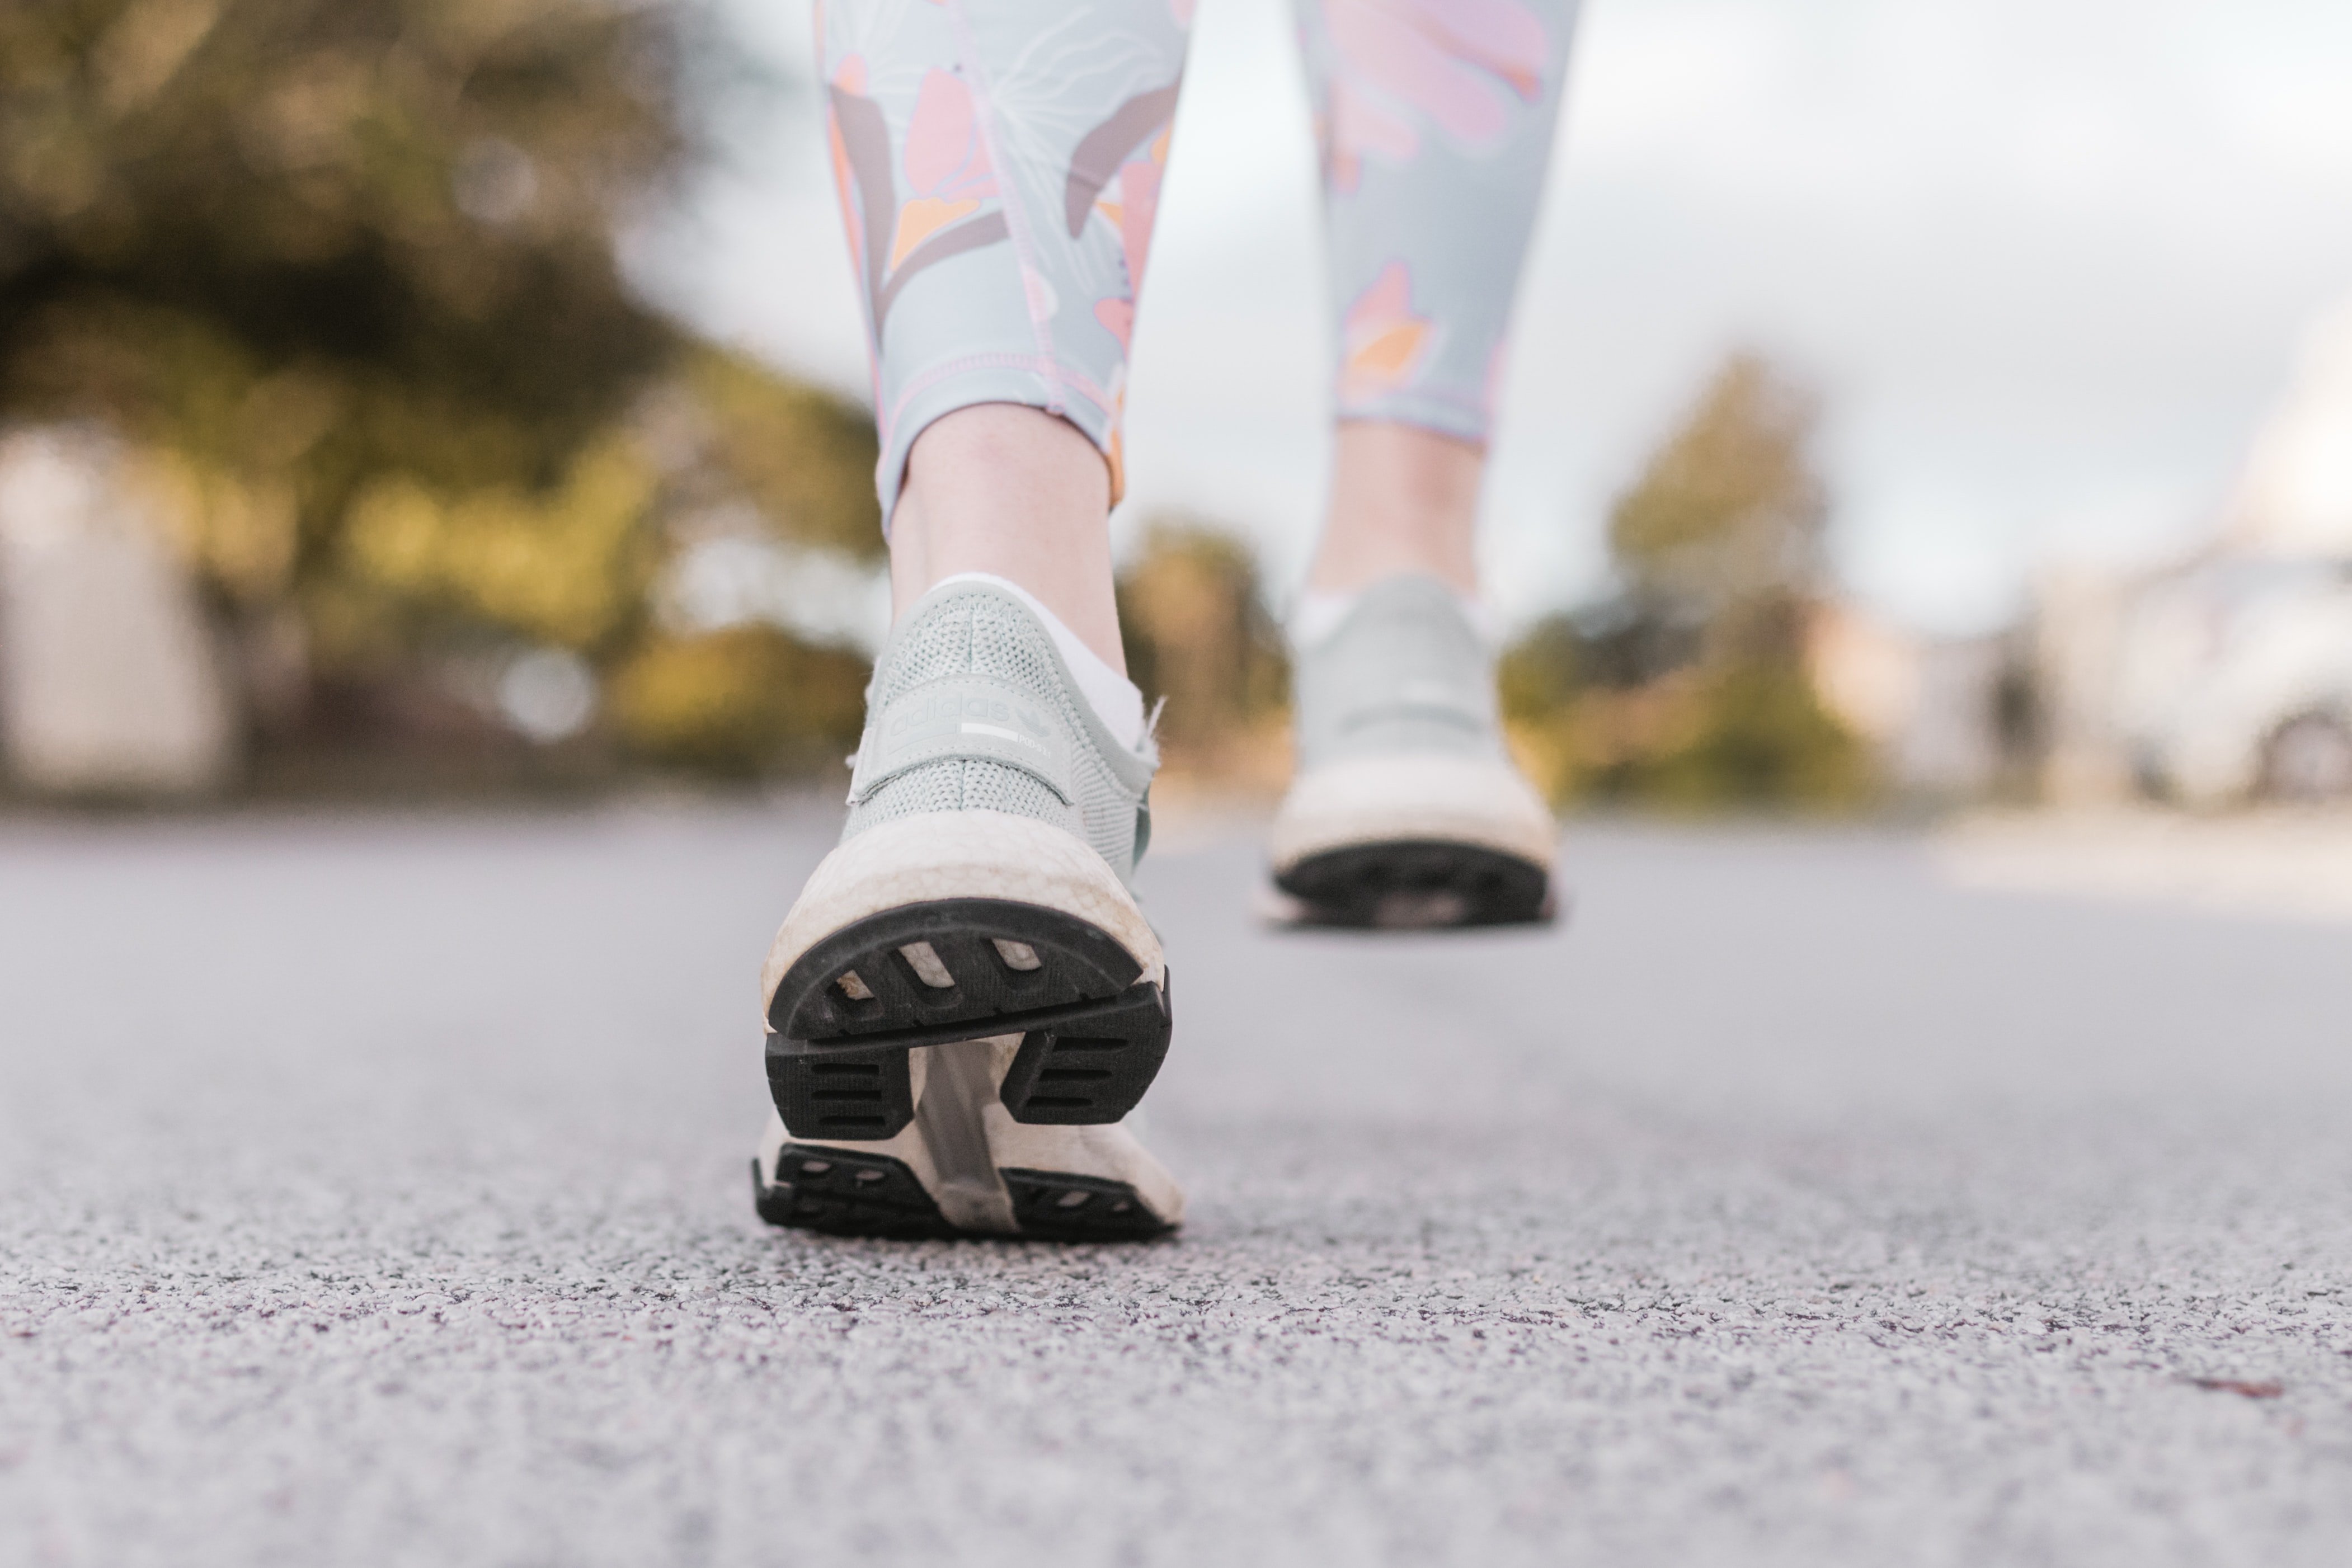 Caminar dos minuts després de menjar, pot ajudar a controlar el nivell de sucre a la sang